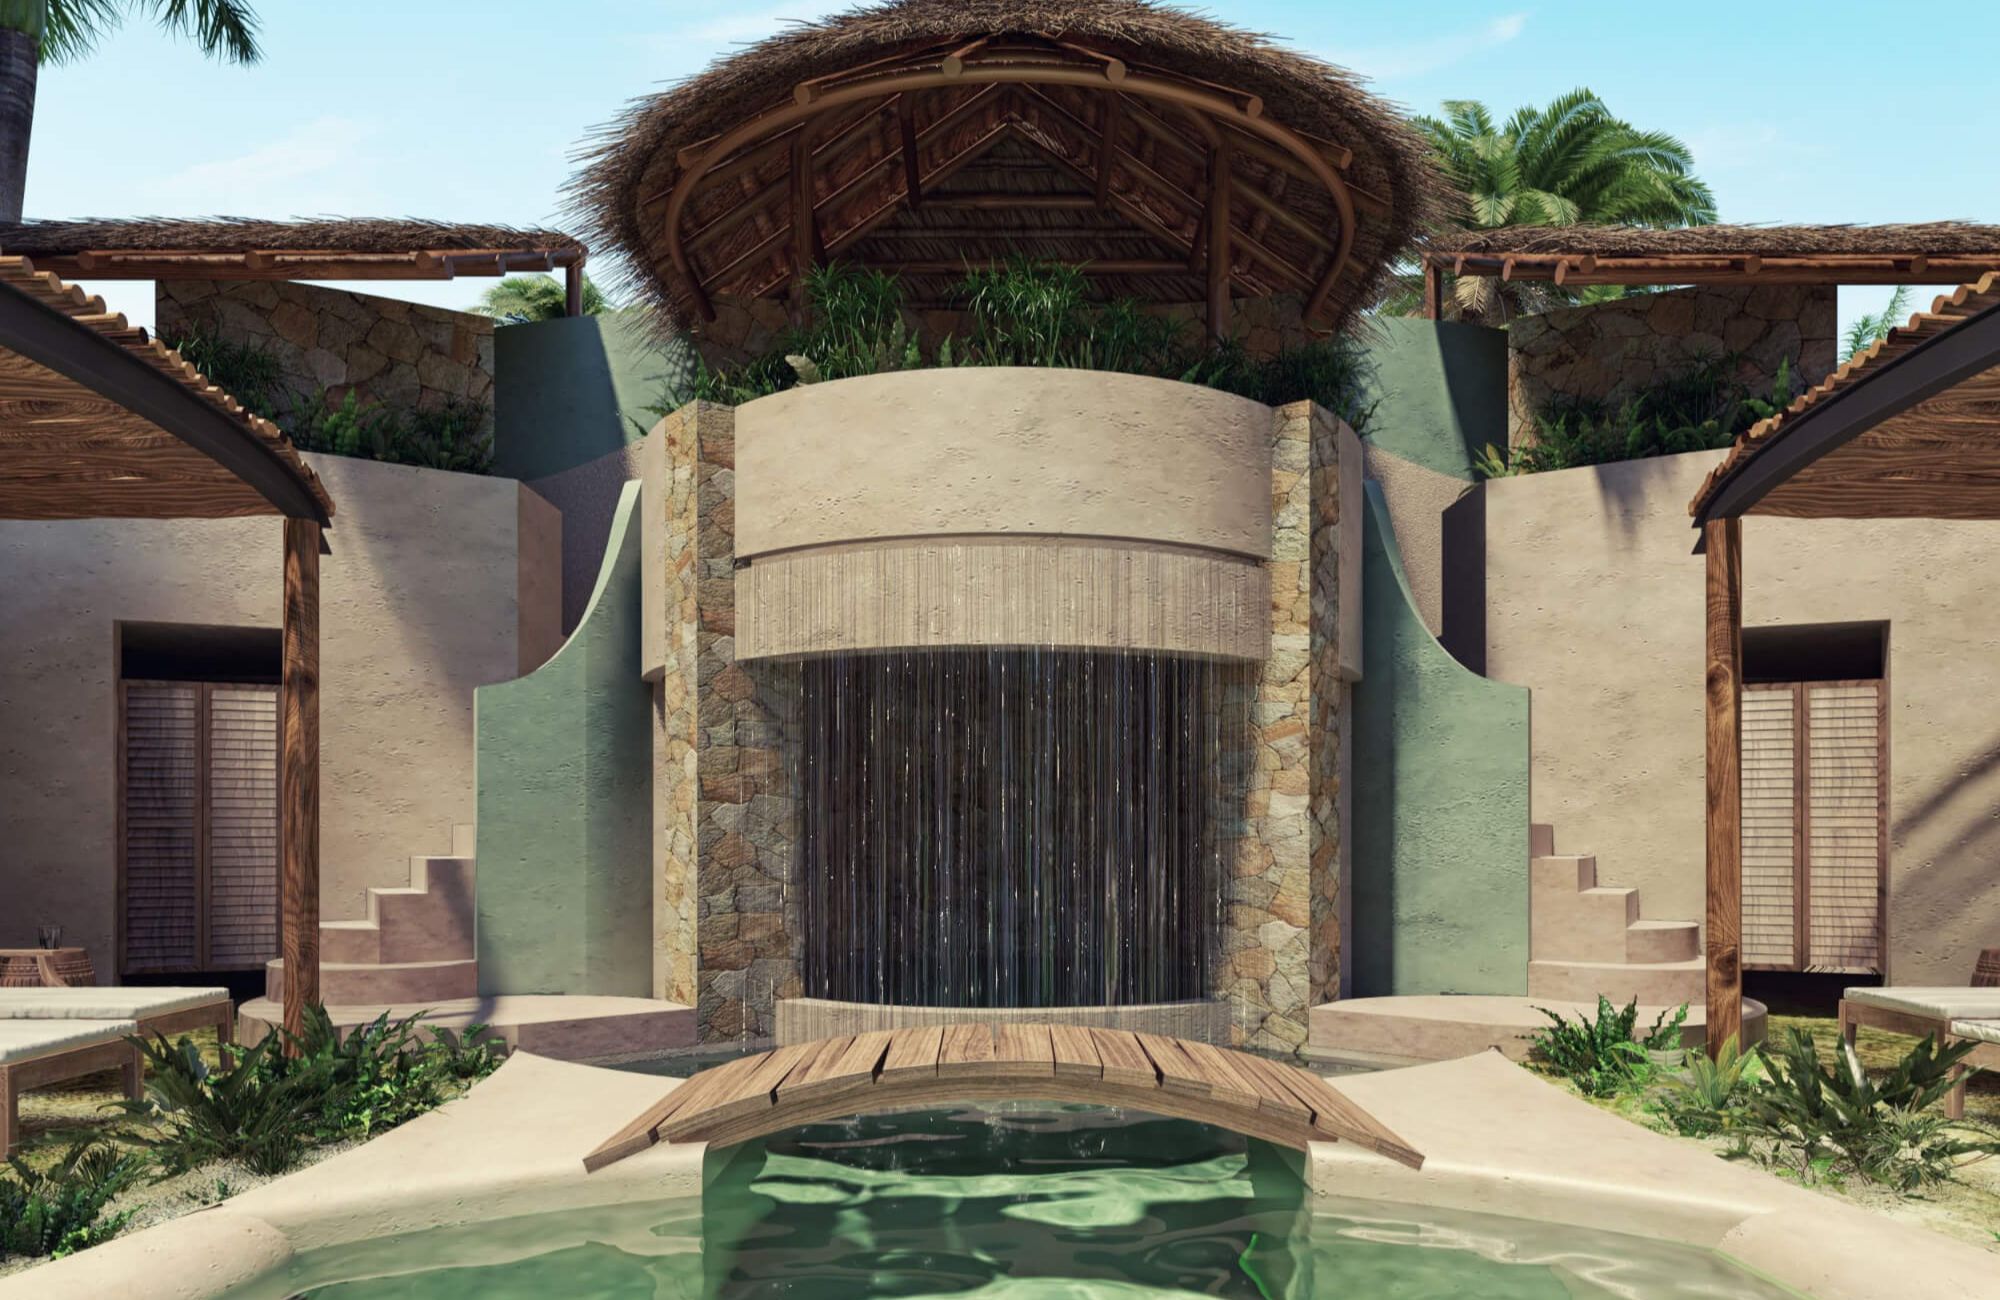 Condominio con acceso al mar y club de playa, areas verdes y amenidades, pre-construccion en venta Chicxulub Yucatan